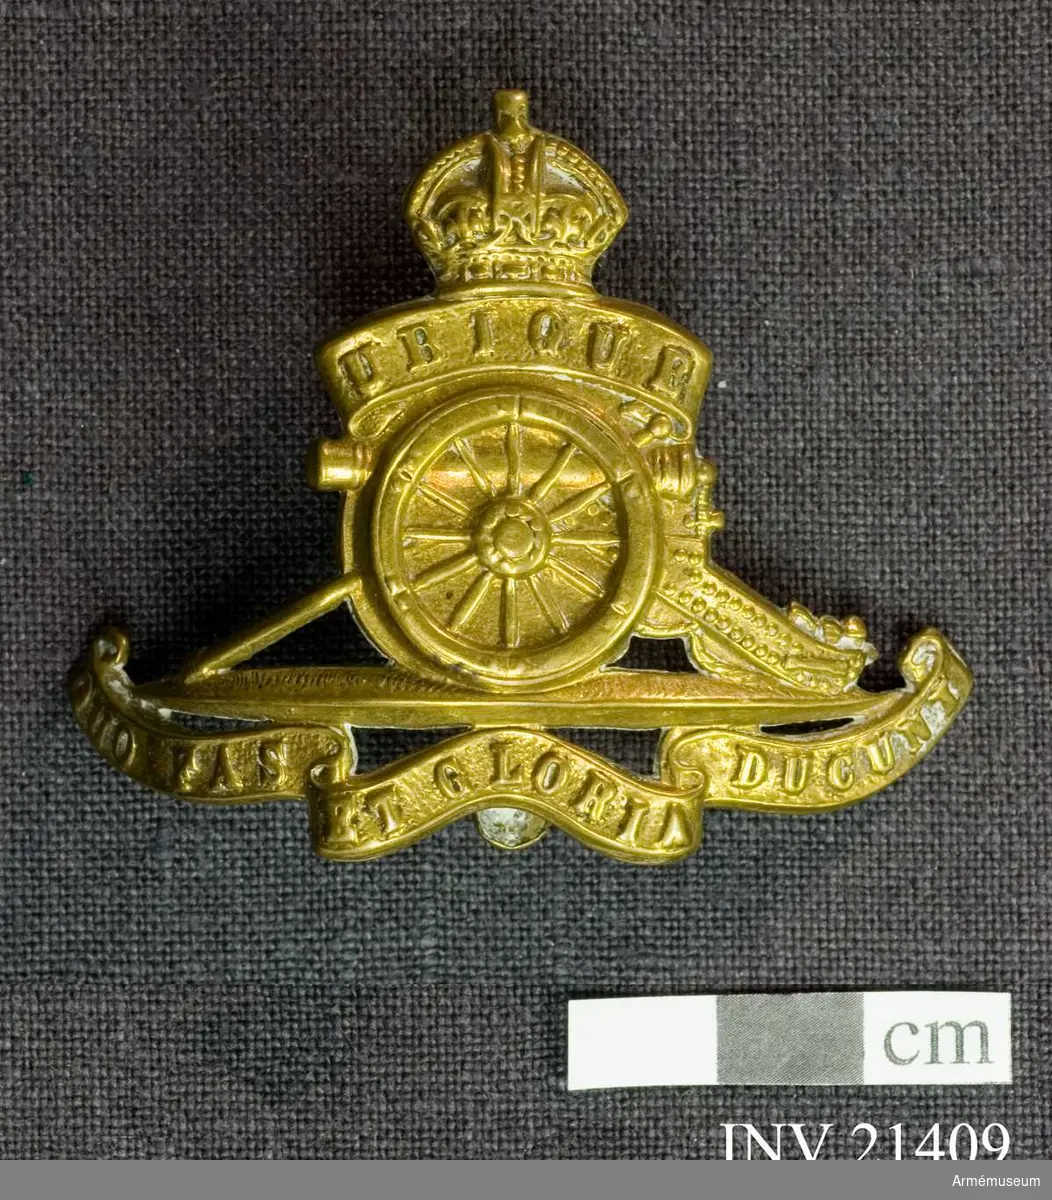 Grupp C I.
För officer vid Royal Canadian Horse Artillery, Kanada.